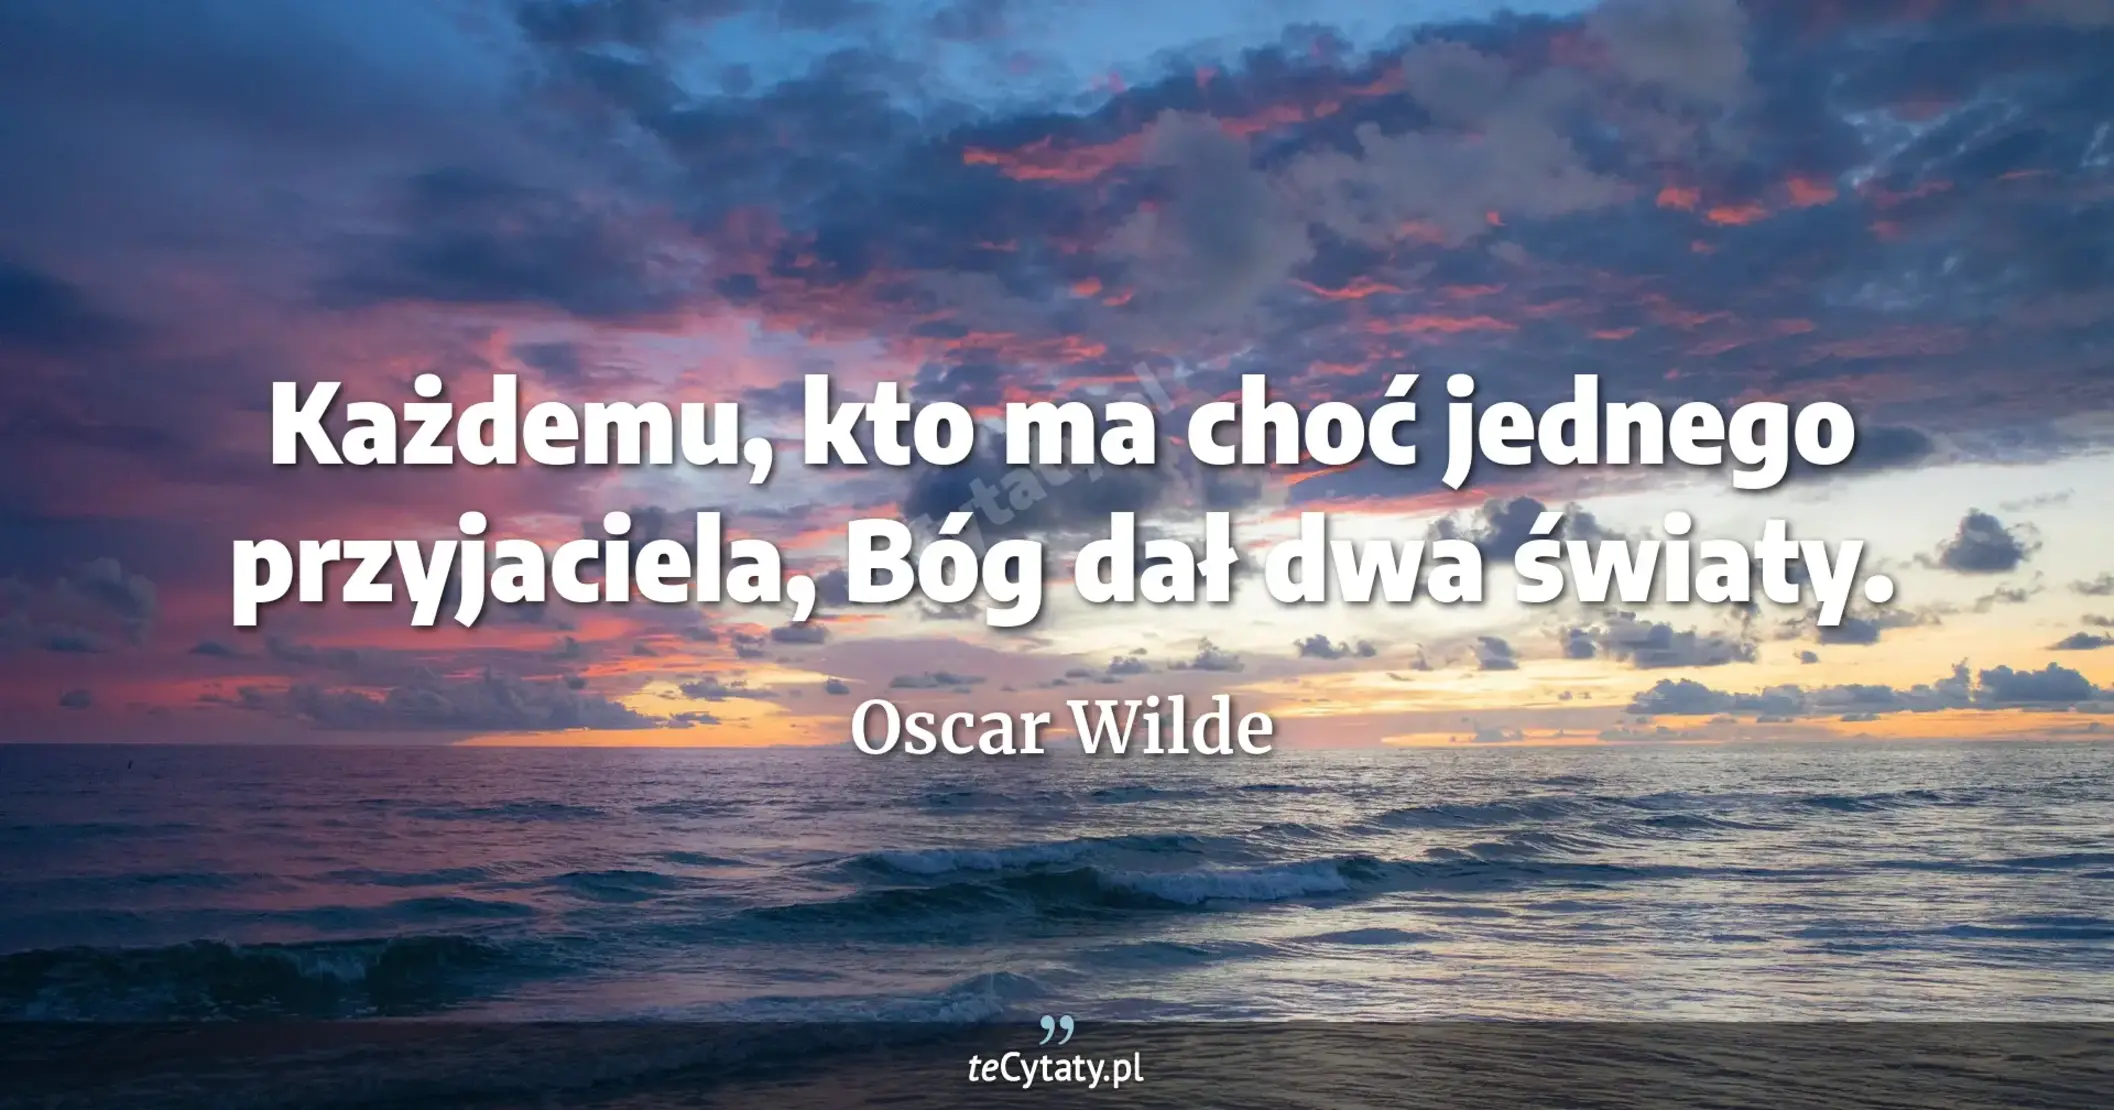 Każdemu, kto ma choć jednego przyjaciela, Bóg dał dwa światy. - Oscar Wilde